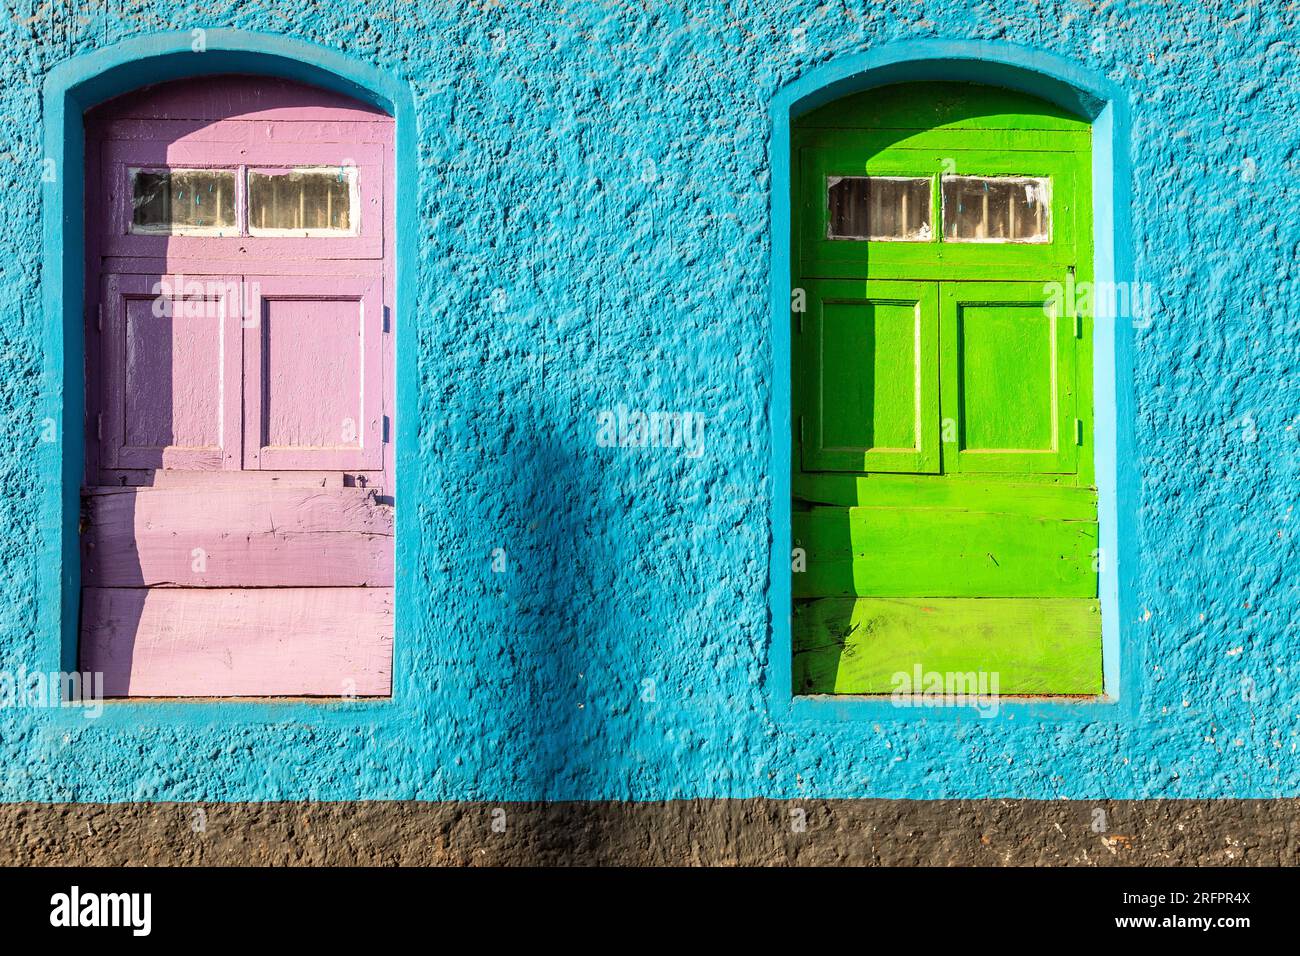 Dos ventanas francesas, una rosa, la otra verde, en una pared azul. Colores llamativos. Foto de stock